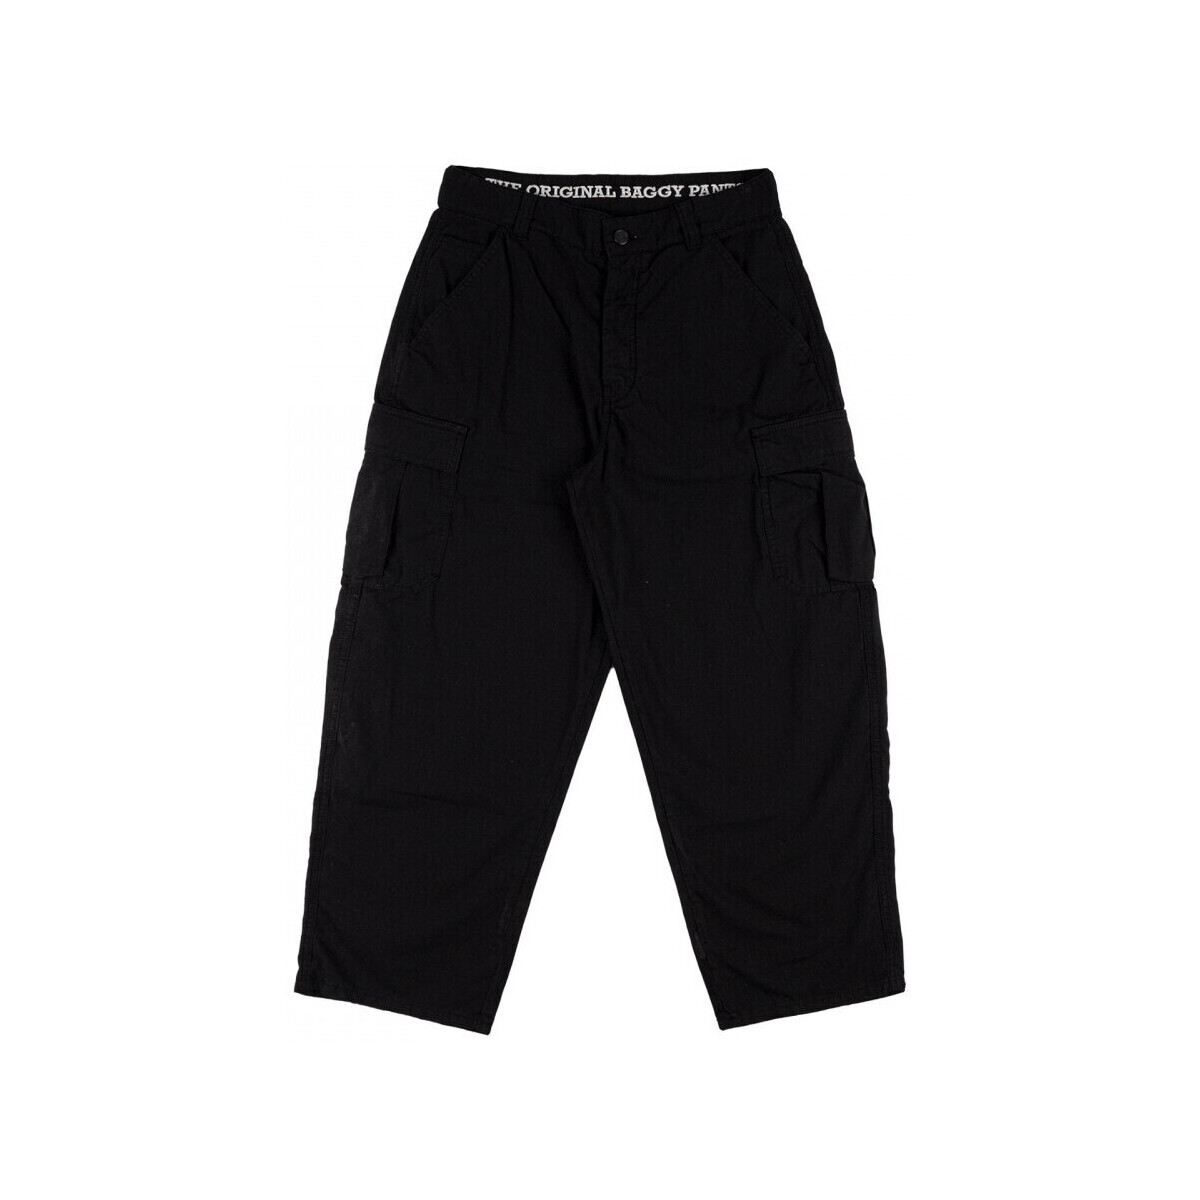 Vêtements Homme Pantalons Homeboy X-tra cargo pants Noir